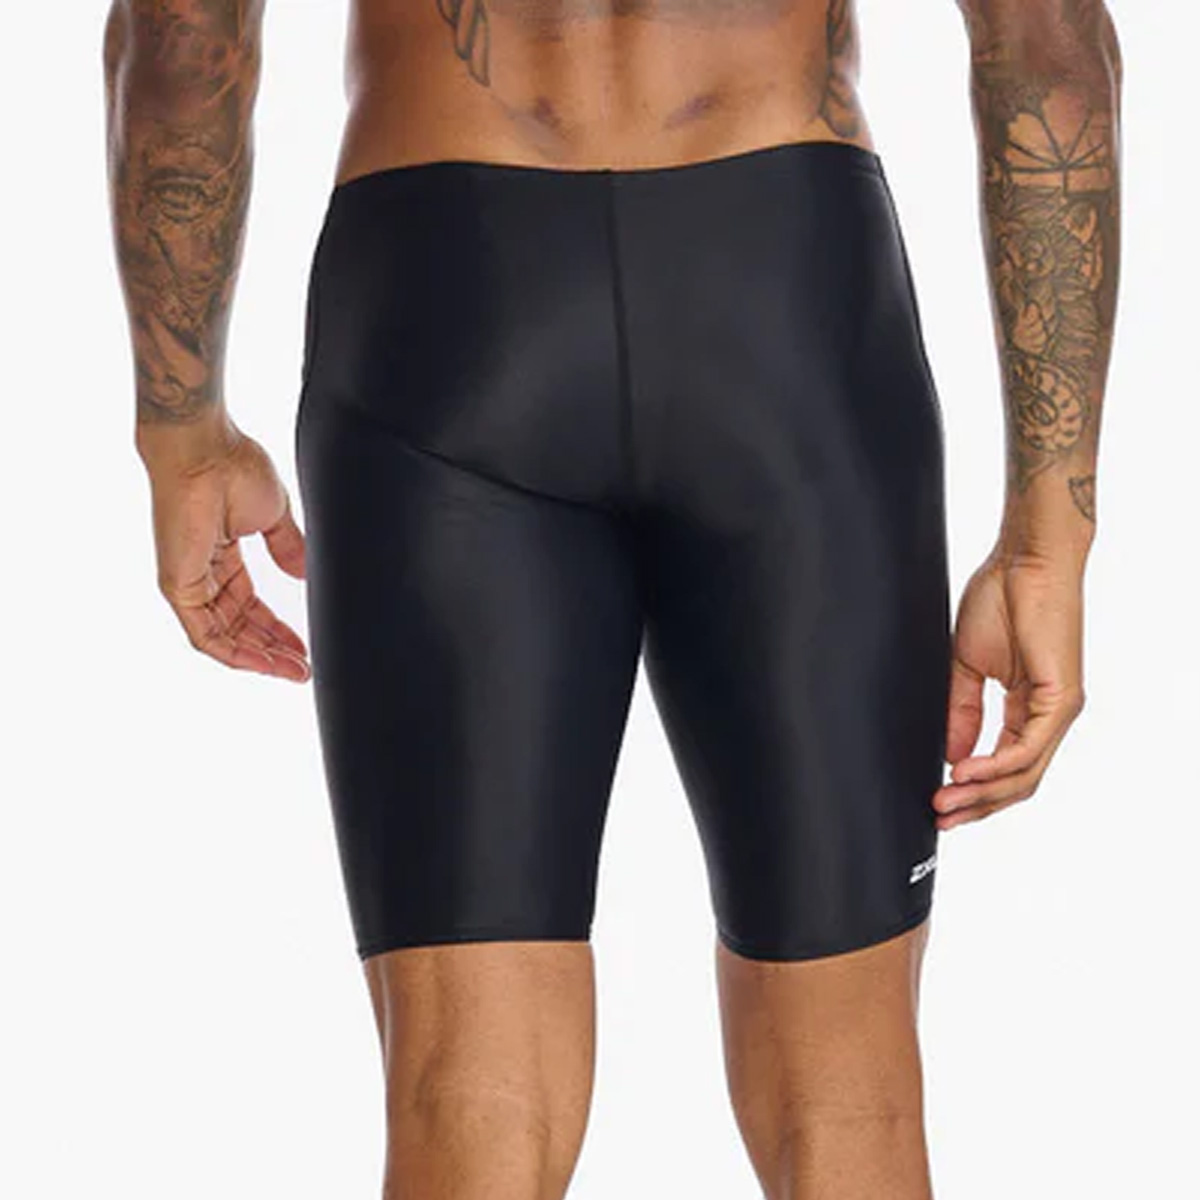 Custom Men's Compression Shorts